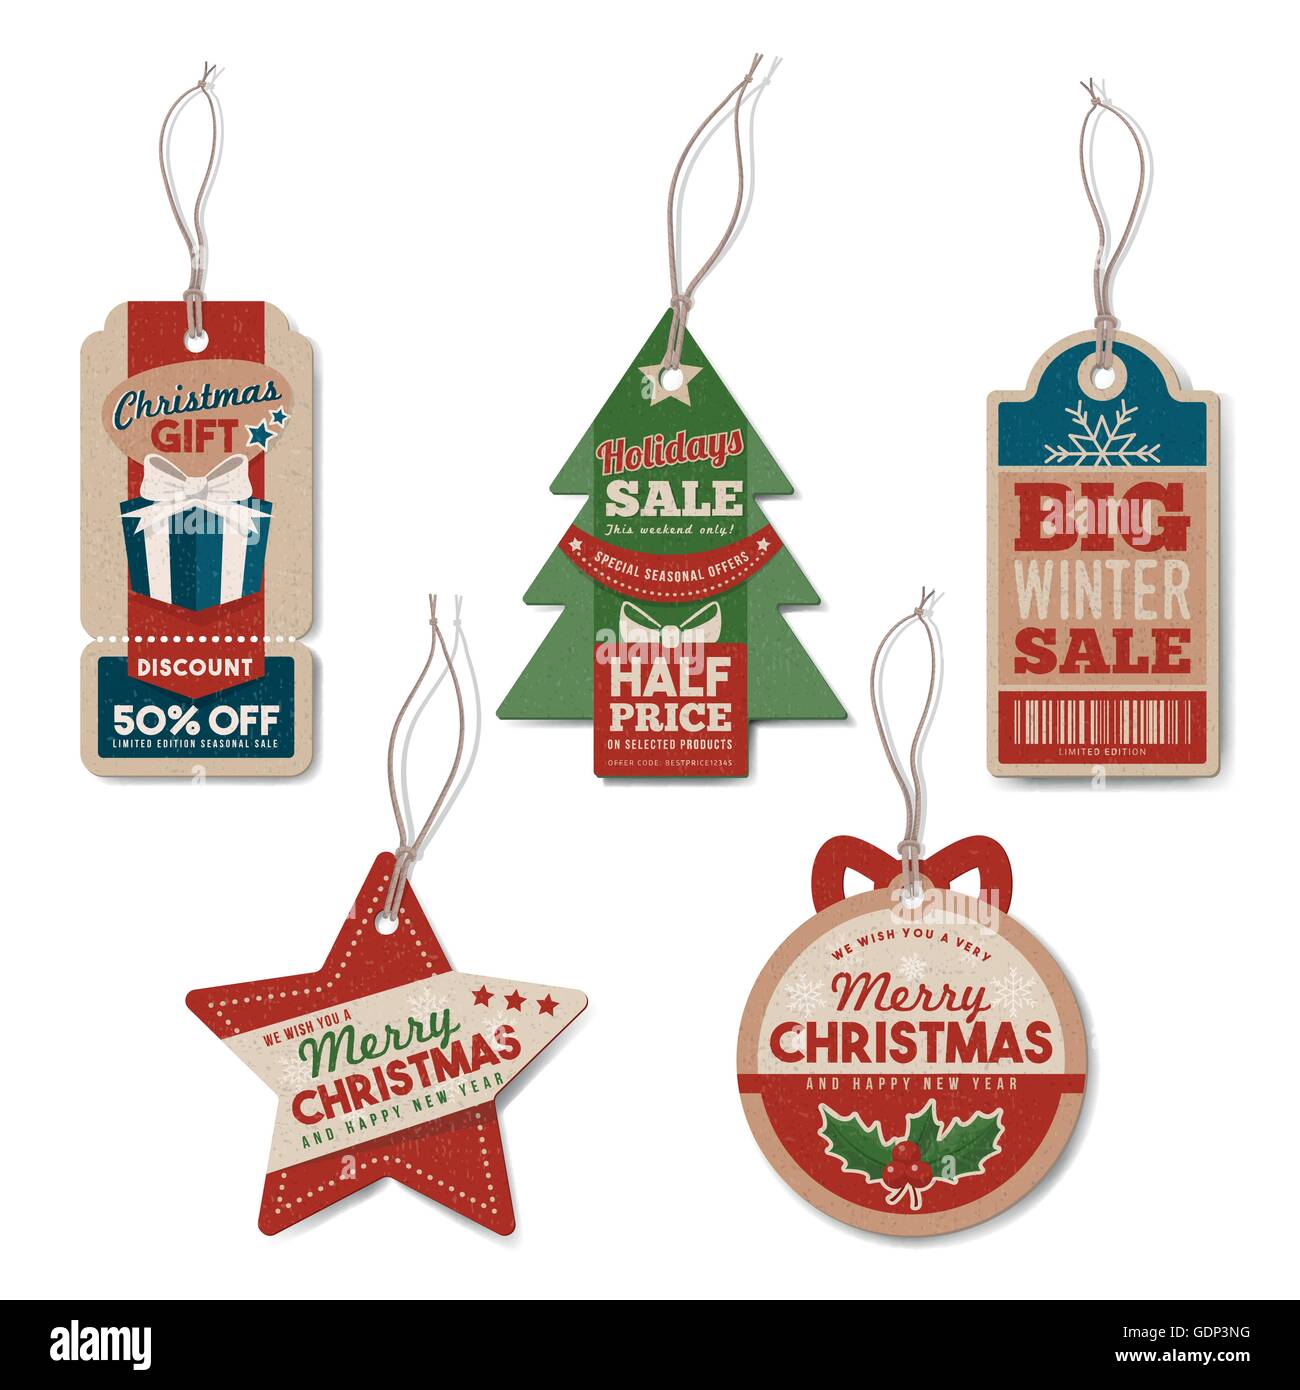 Vintage Weihnachten Stichwörter Set mit Schnur, strukturierte realistische Papier, Einzelhandel, Verkauf und Discount-Konzept Stock Vektor